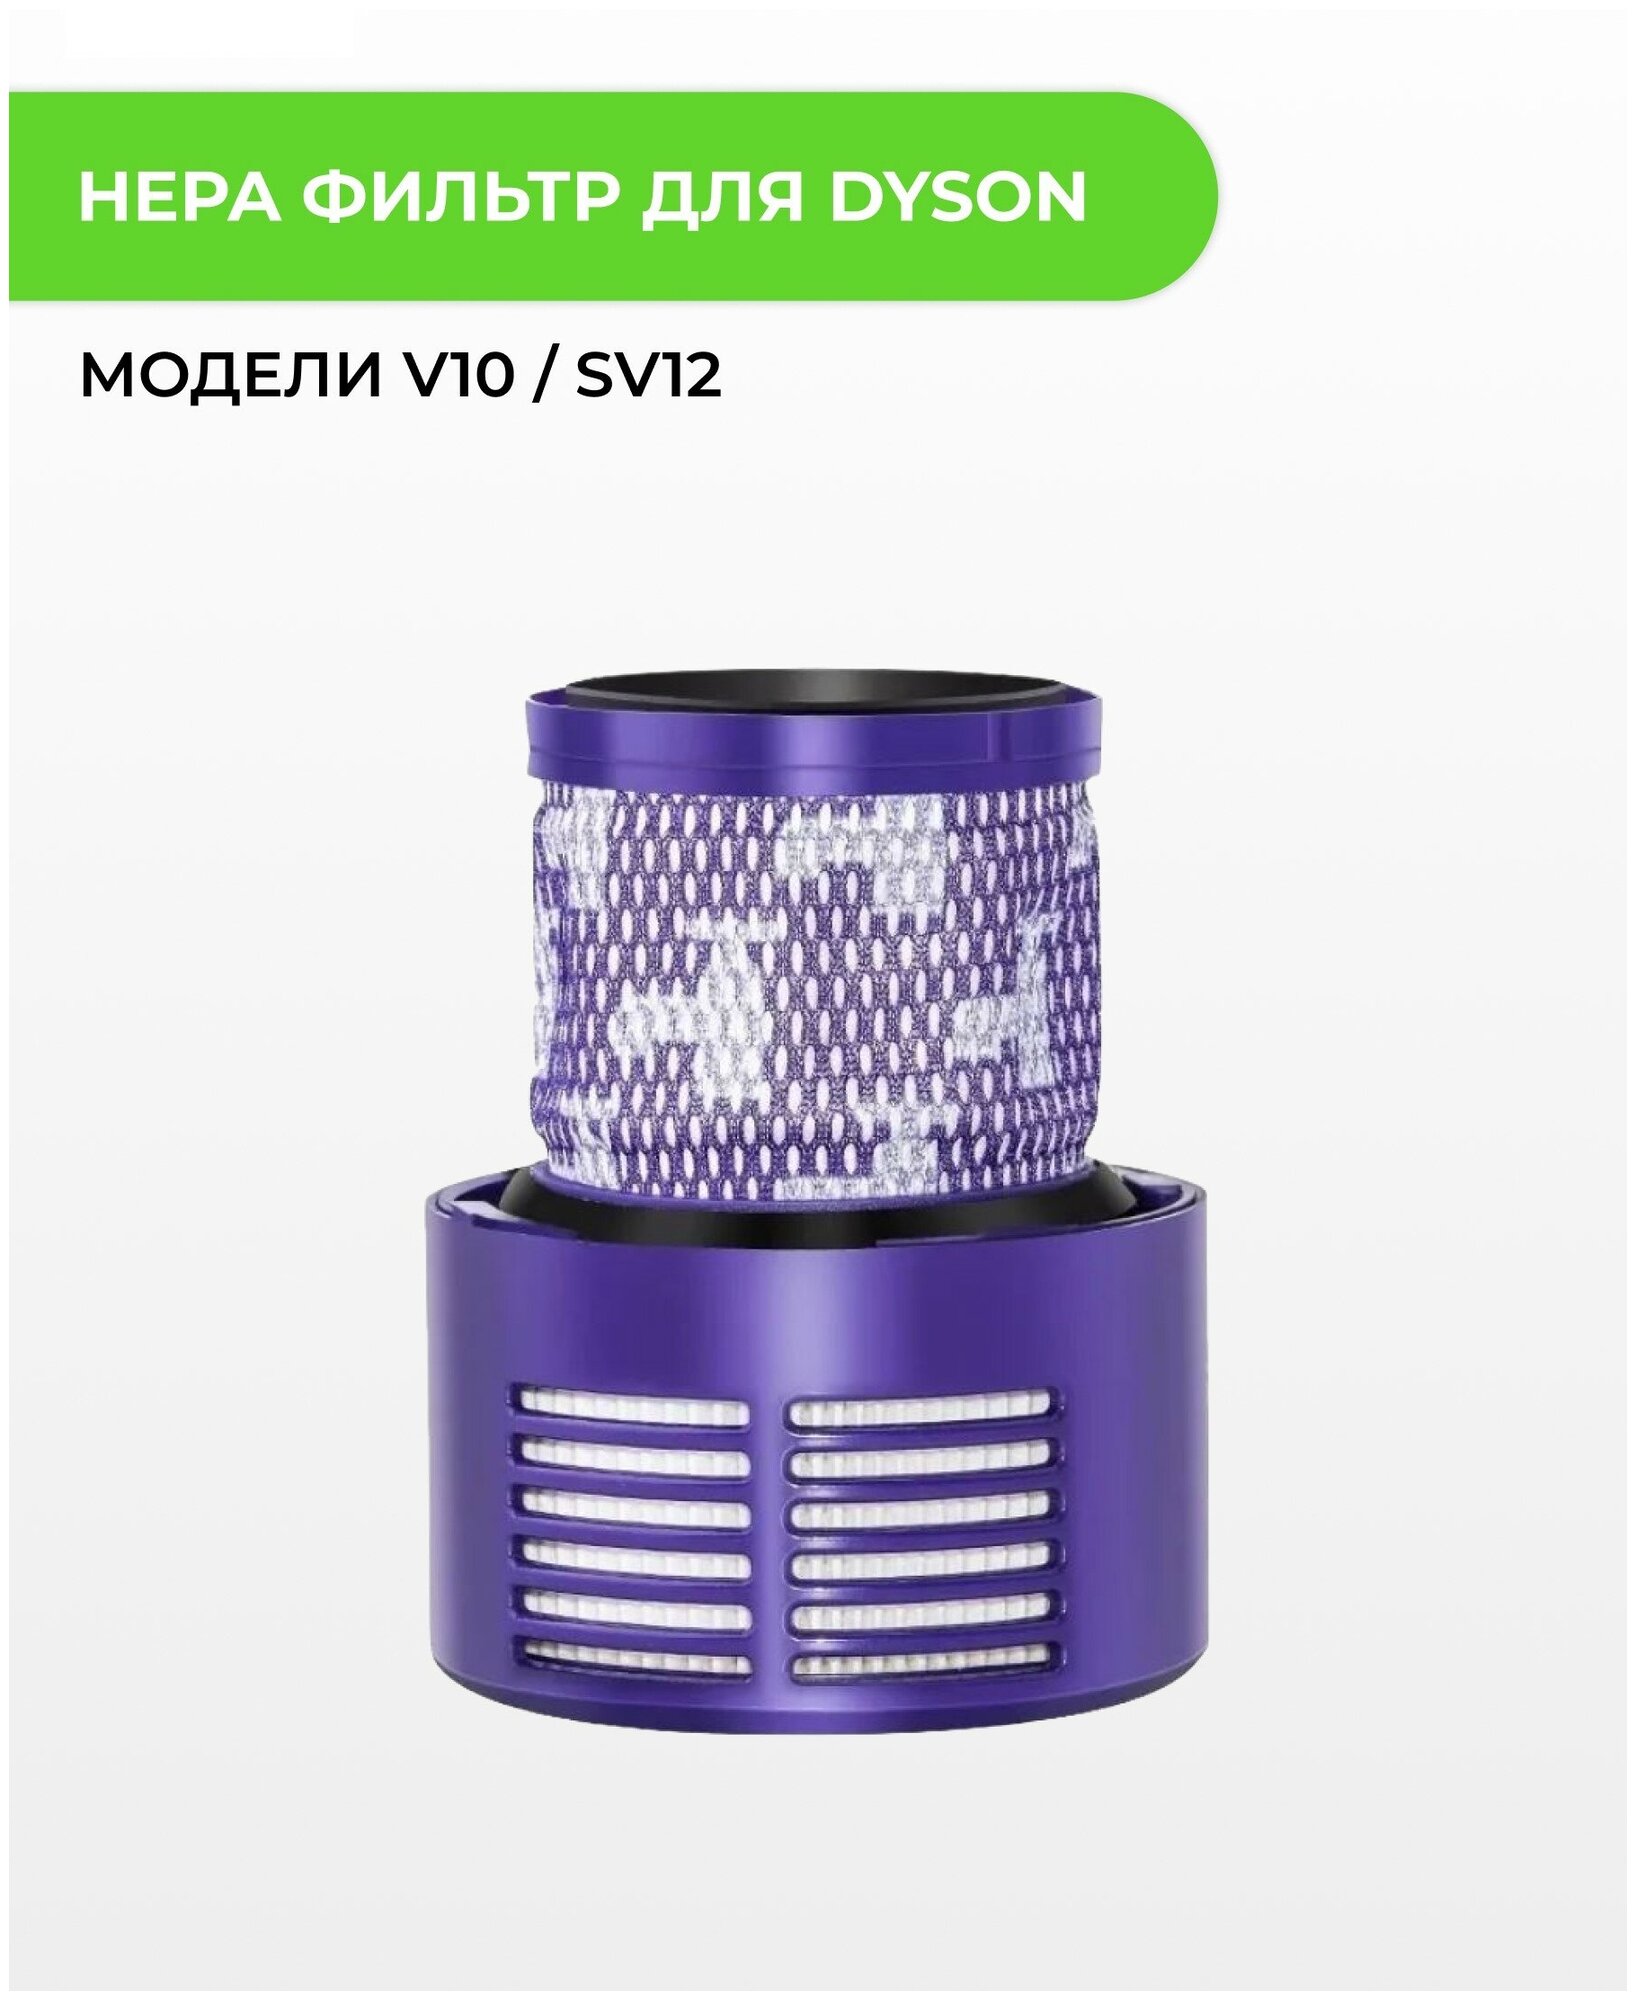 Hepa фильтр ABC для пылесоса Dyson V10 / SV12